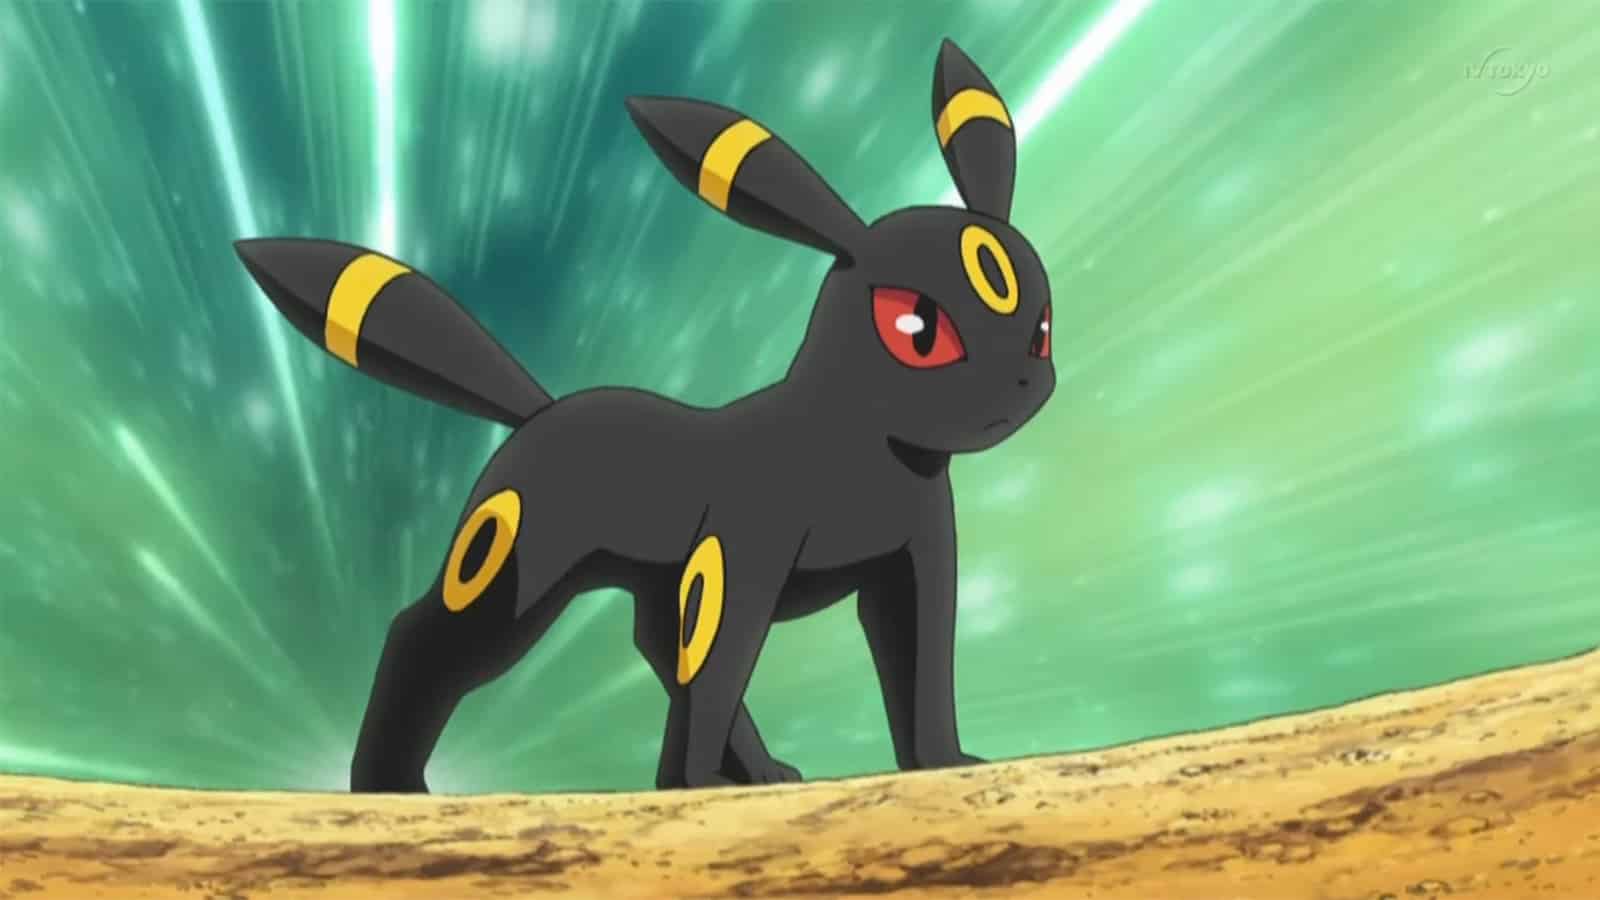 Dark-type Umbreon in the Pokemon anime